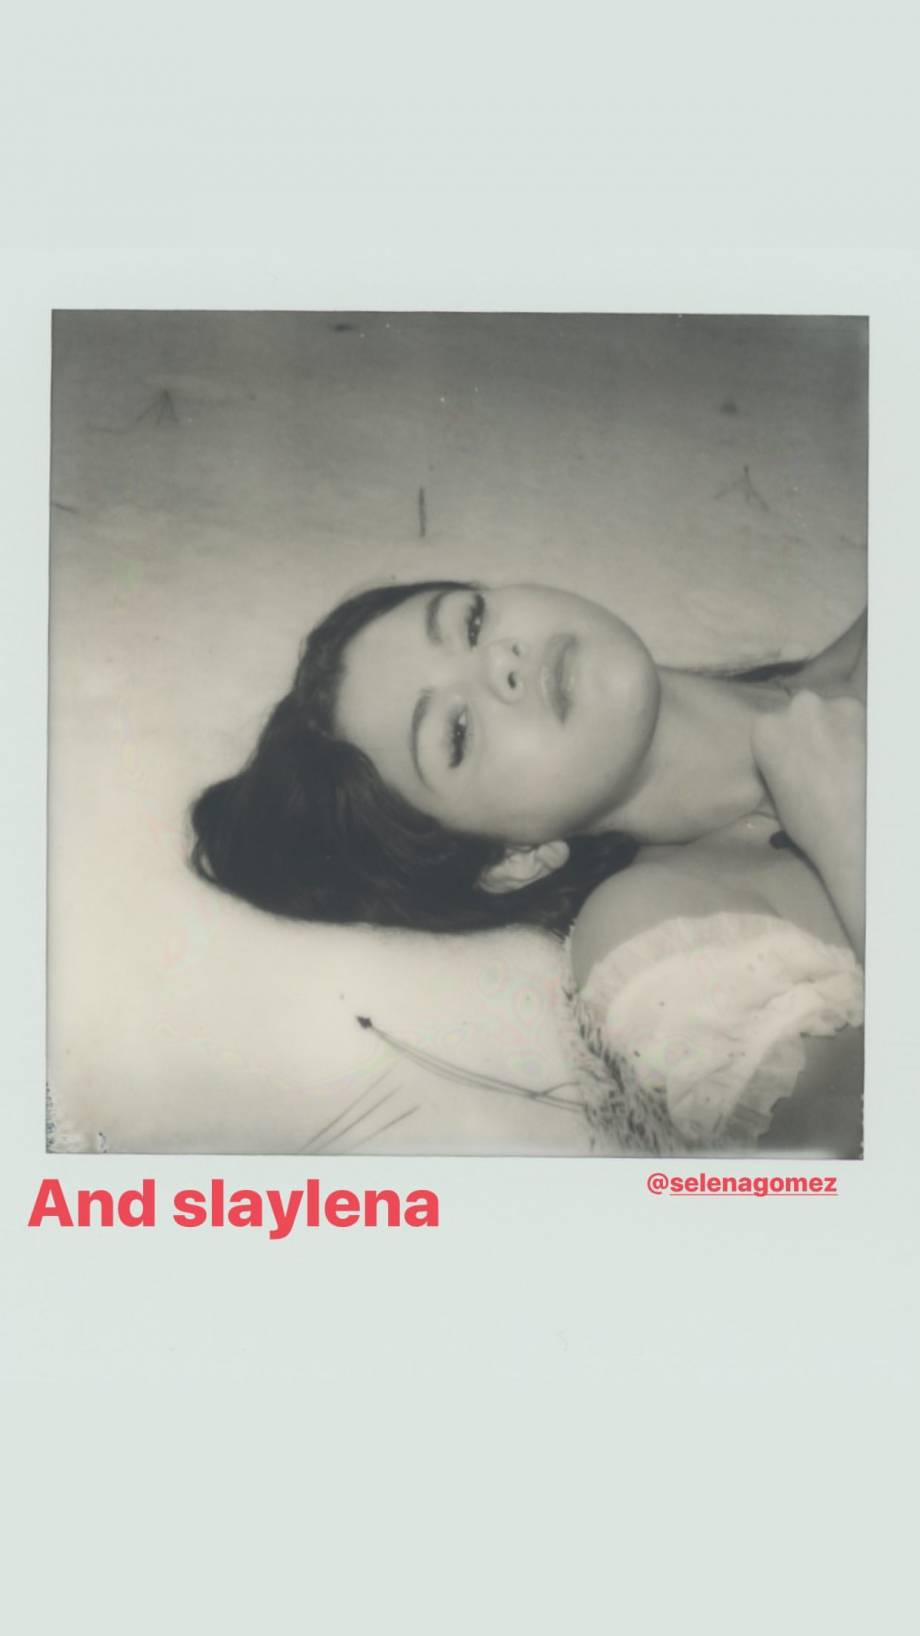 Selena Gomez – Social media